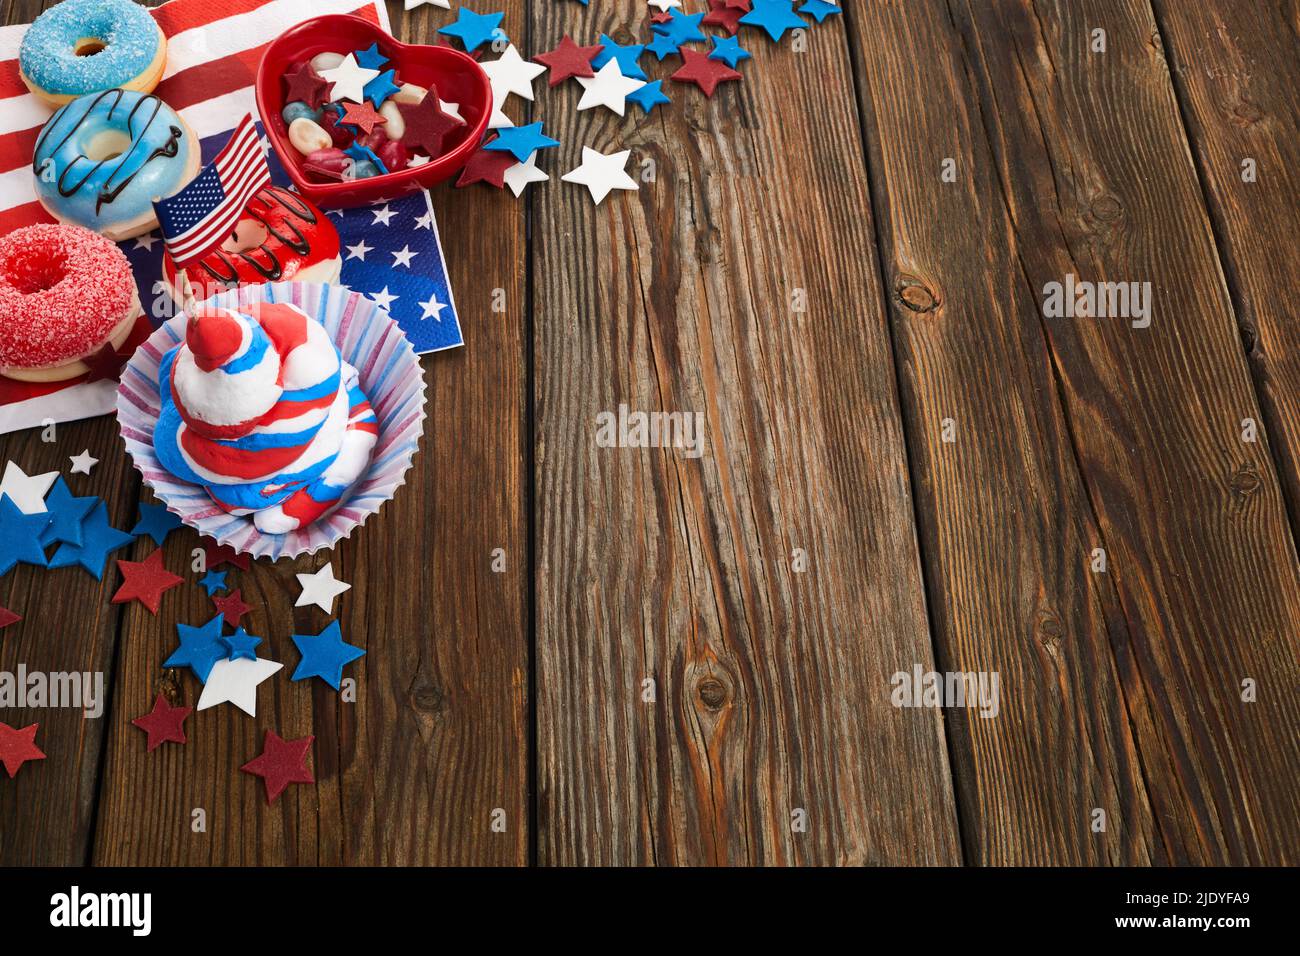 Concept de jour de l'indépendance américaine, de fête et de vacances - beignet glacé, bonbons, petits gâteaux en vaisselle jetable et étoiles. Banque D'Images